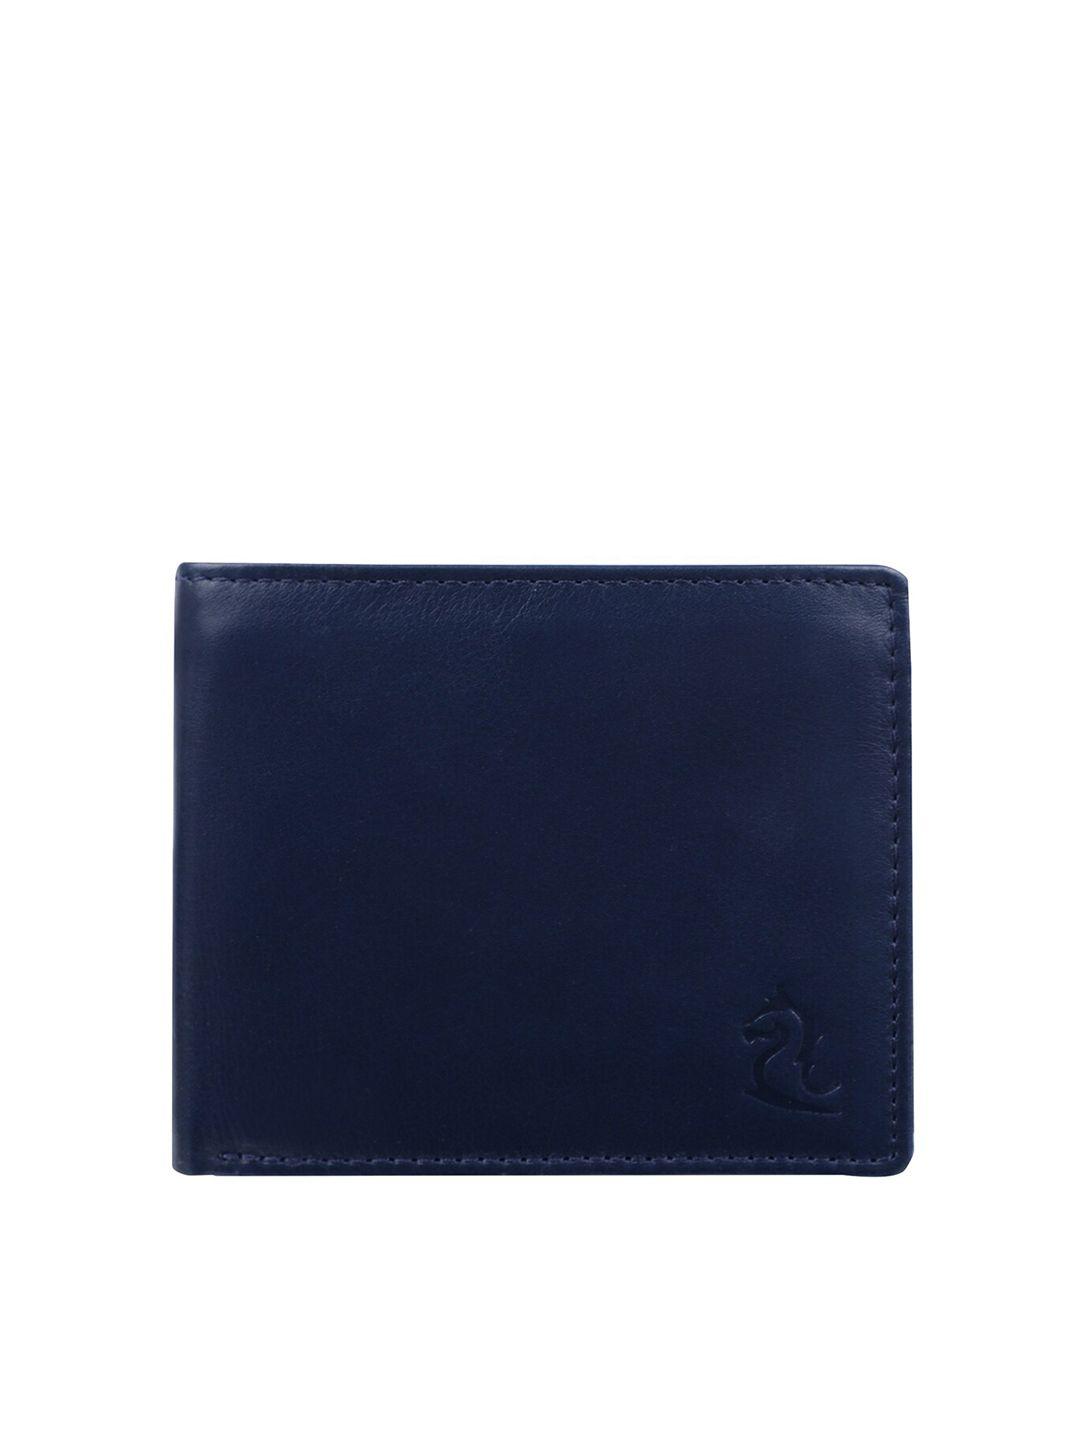 kara men blue three fold wallet